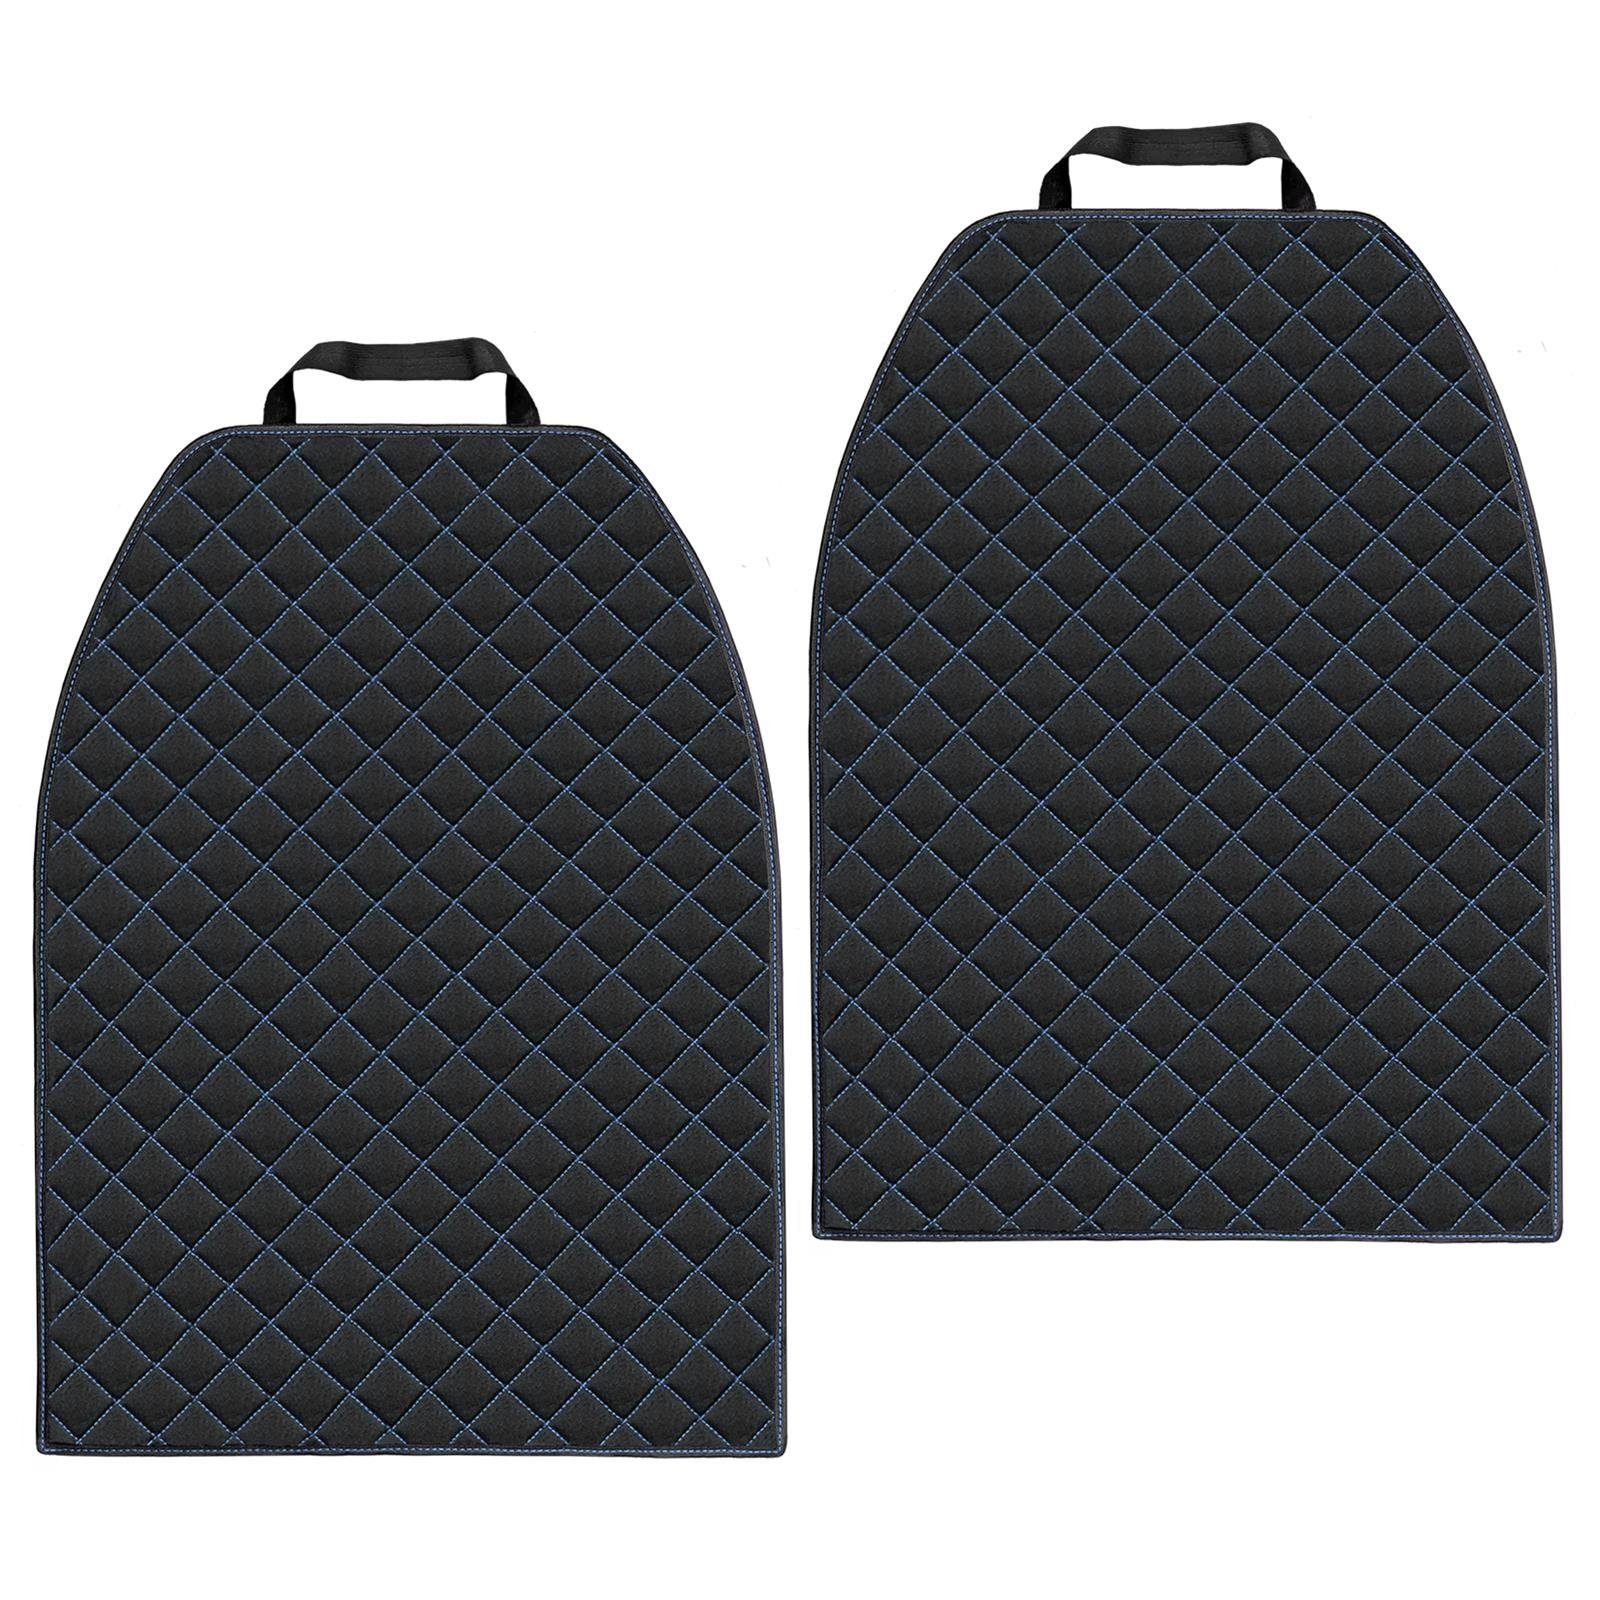 L & P Car Design Auto-Rückenlehnenschutz Rückenlehnenschoner in schwarz mit blauer Naht aus Cordura Sitzschoner, 2 Stück